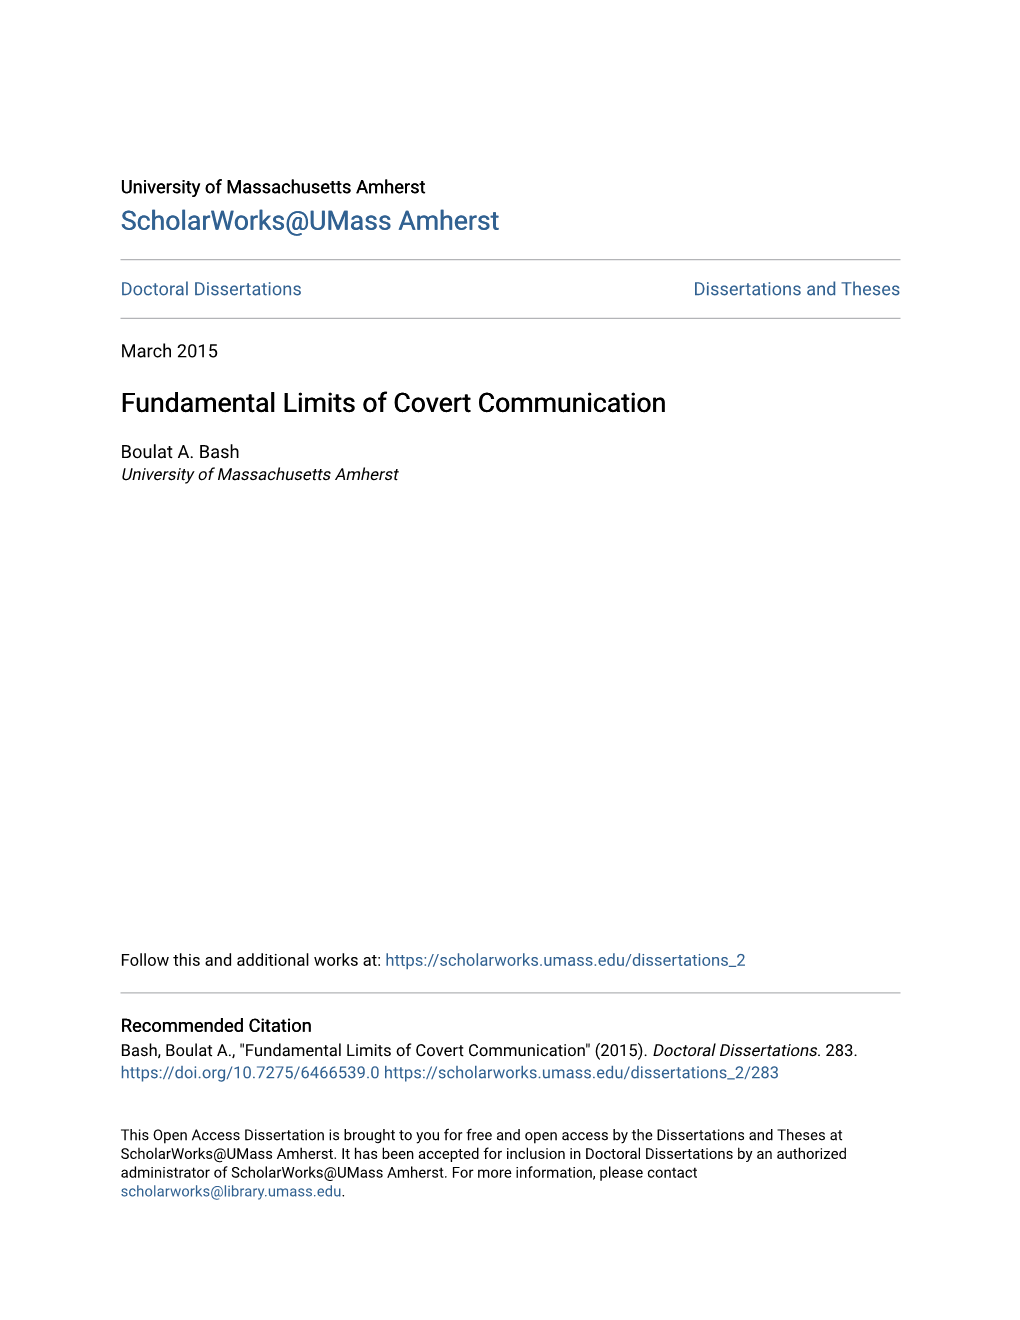 Fundamental Limits of Covert Communication